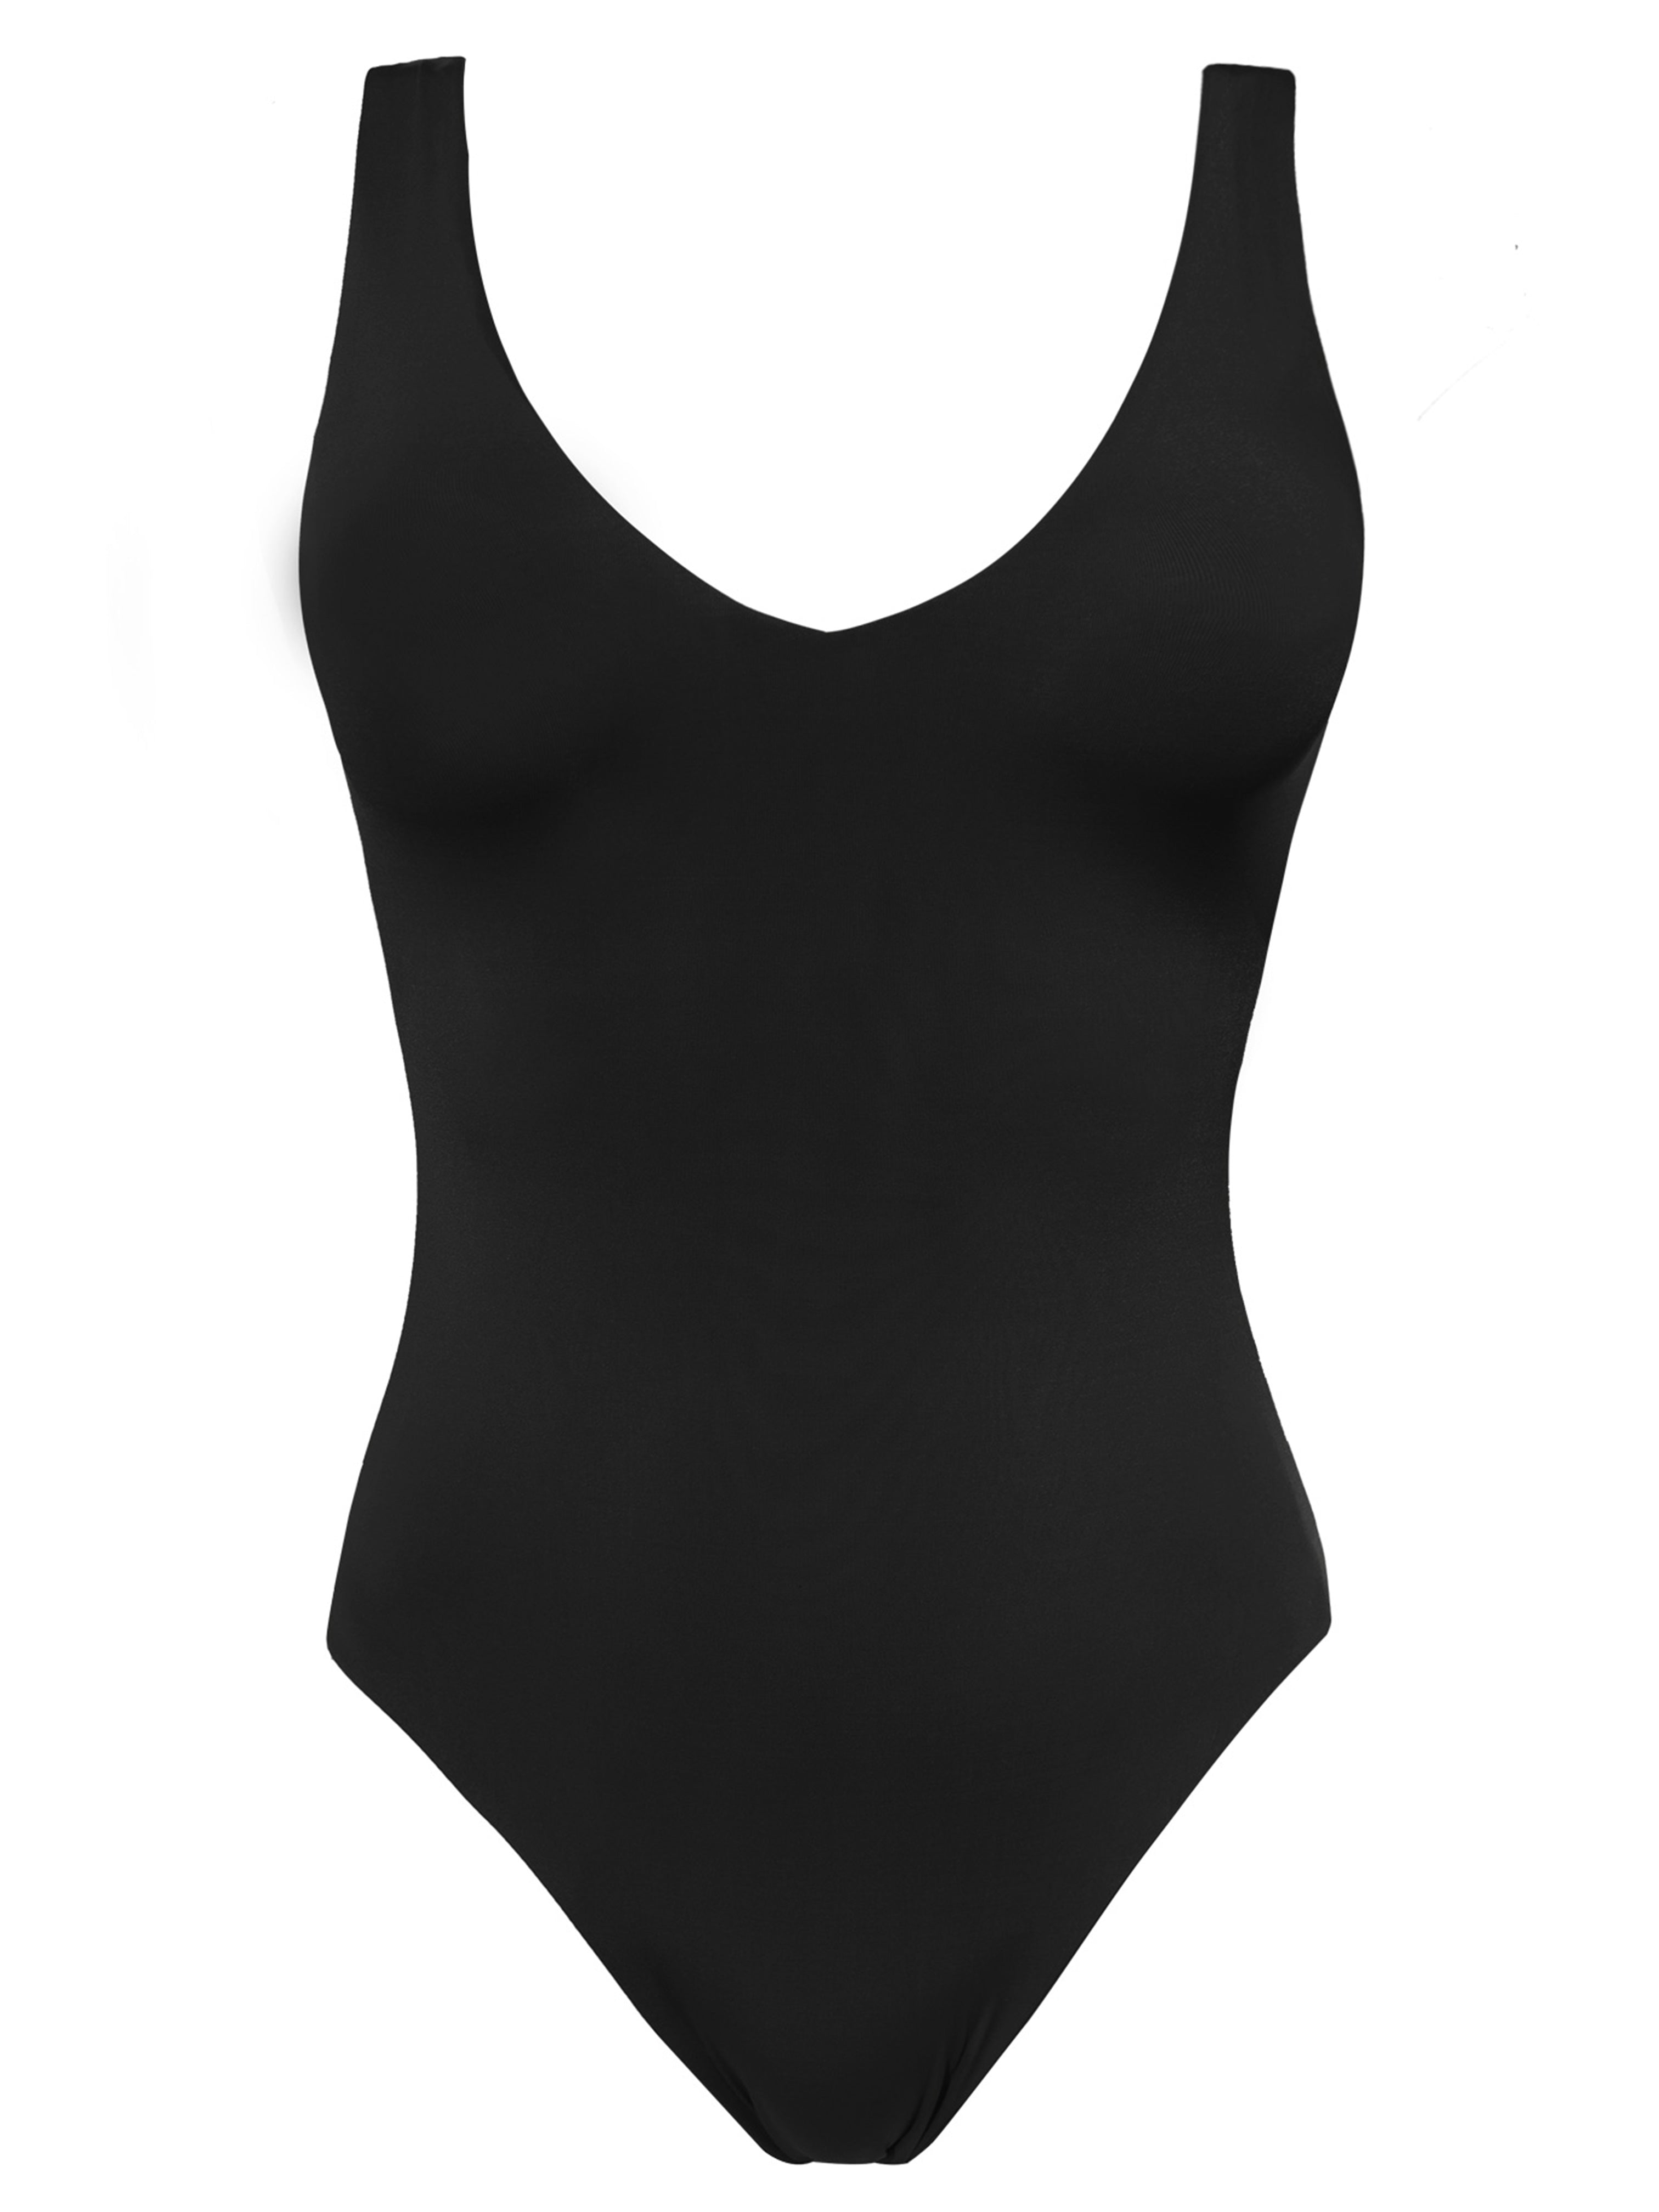 ODETTE - BLACK – ENEZ Swimwear